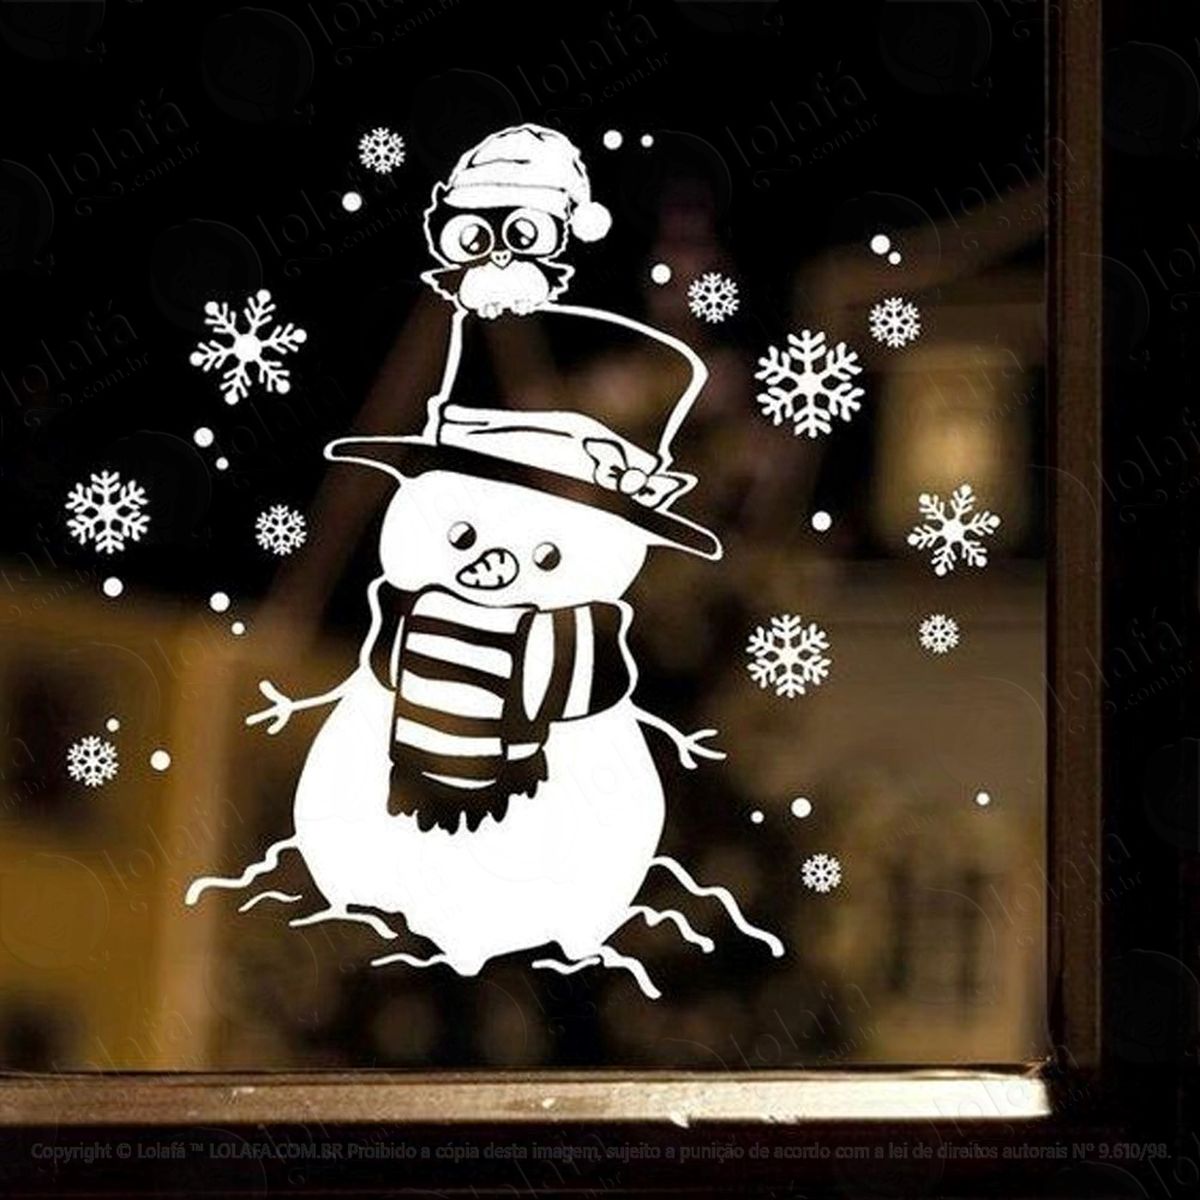 boneco de neve com coruja adesivo de natal para vitrine, parede, porta de vidro - decoração natalina mod:272